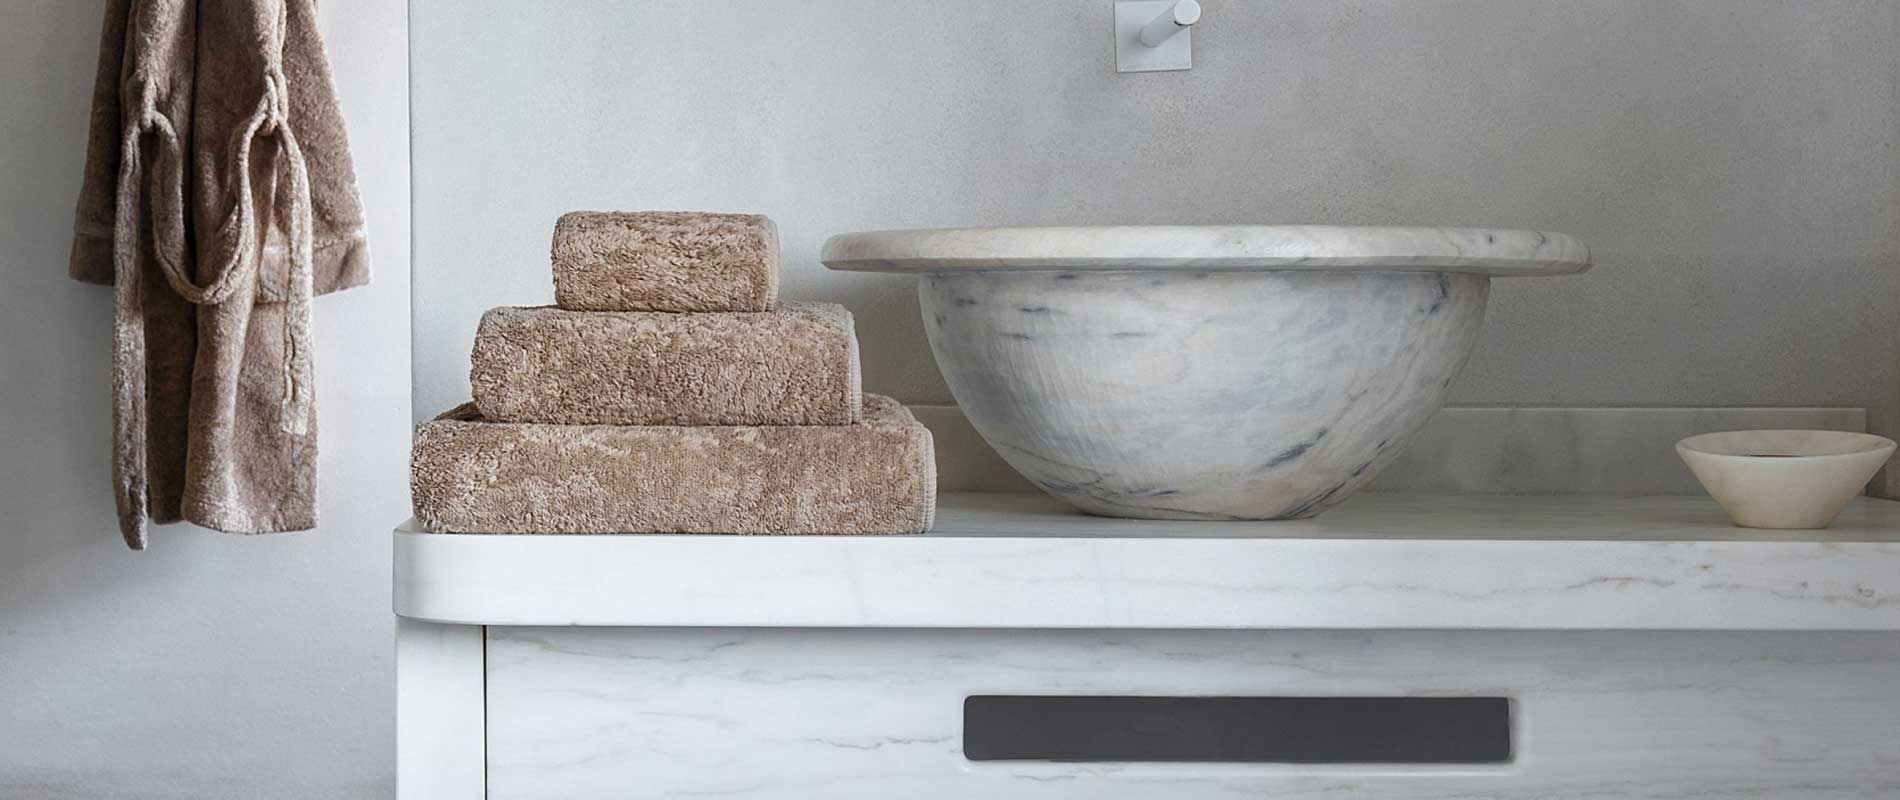 Graccioza, a brand of luxury bath towels